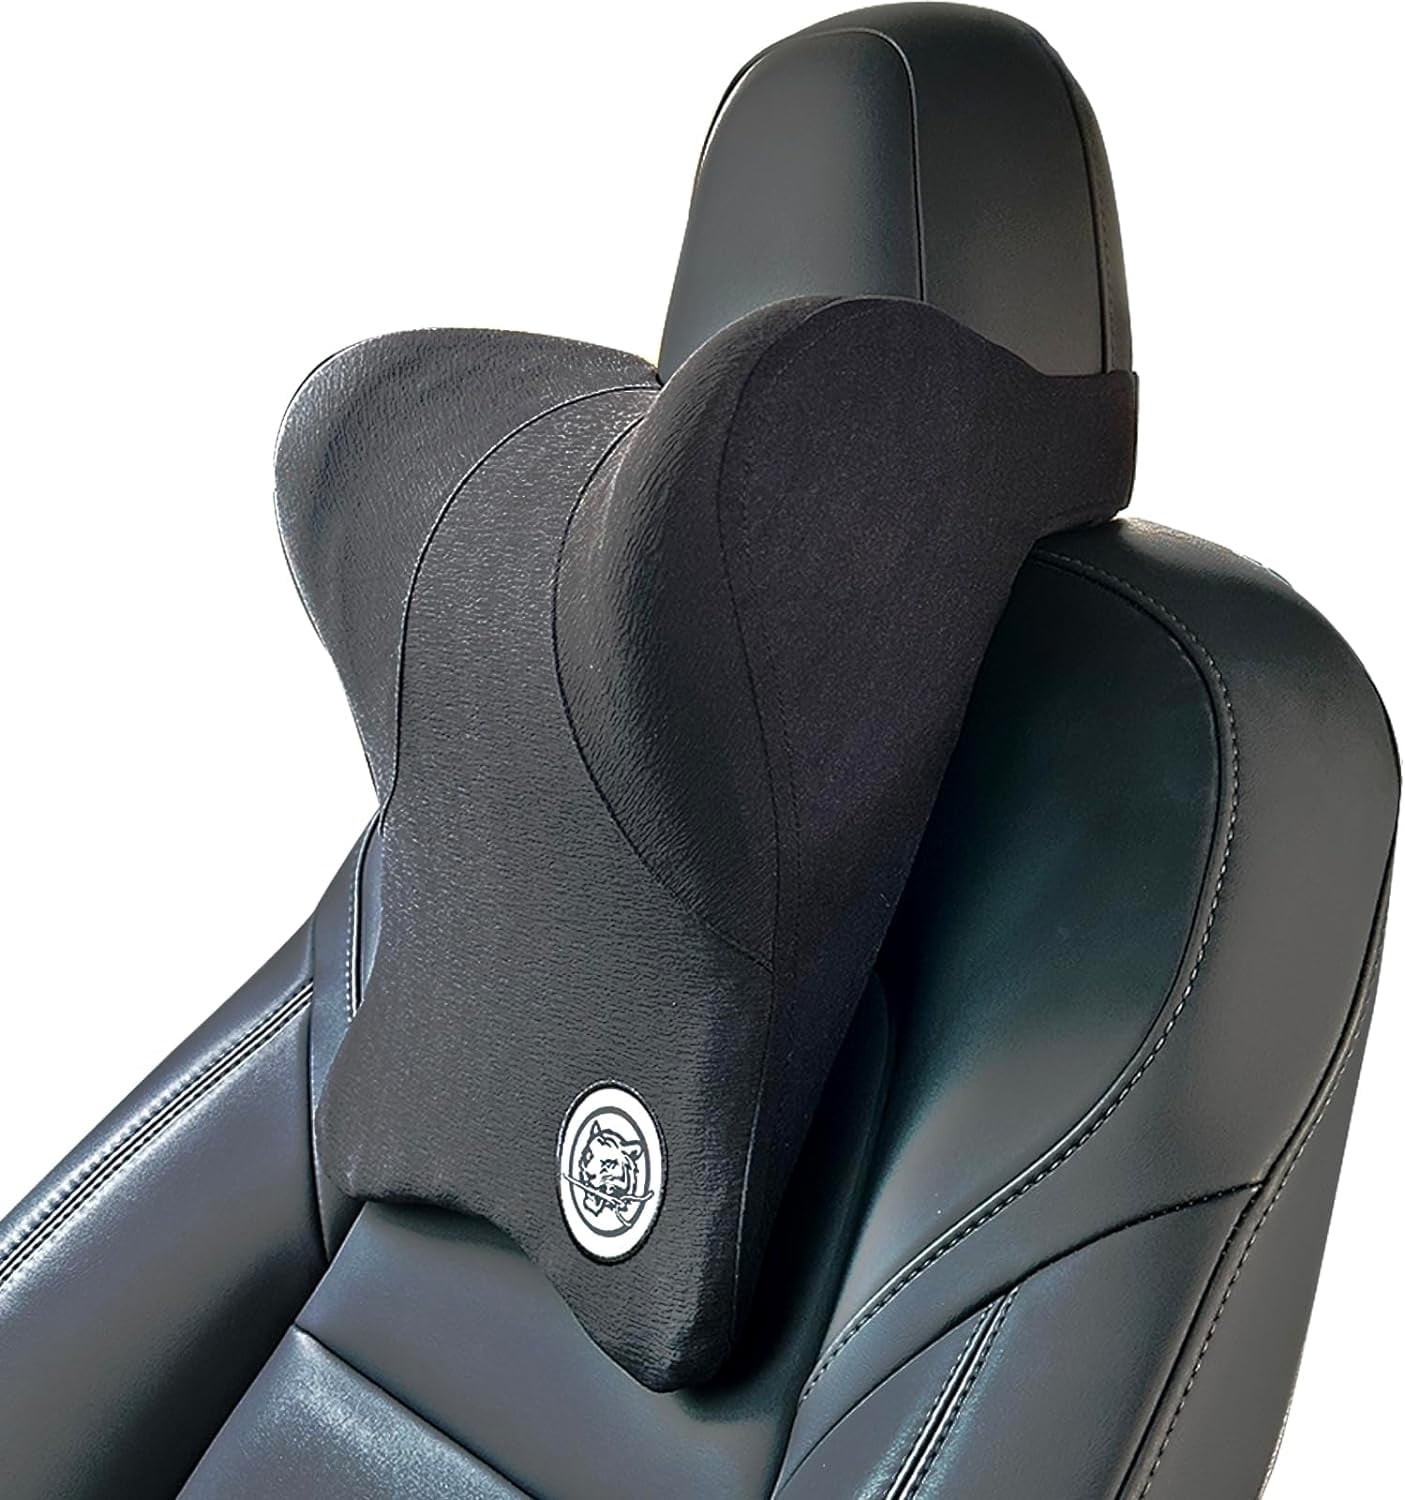 Kaufe Sitz Kopfstütze Reise Rest Neck Kissen PU Leder Hals Kissen Memory  Foam Kissen Für Tesla Modell 3/Y/X/S Auto